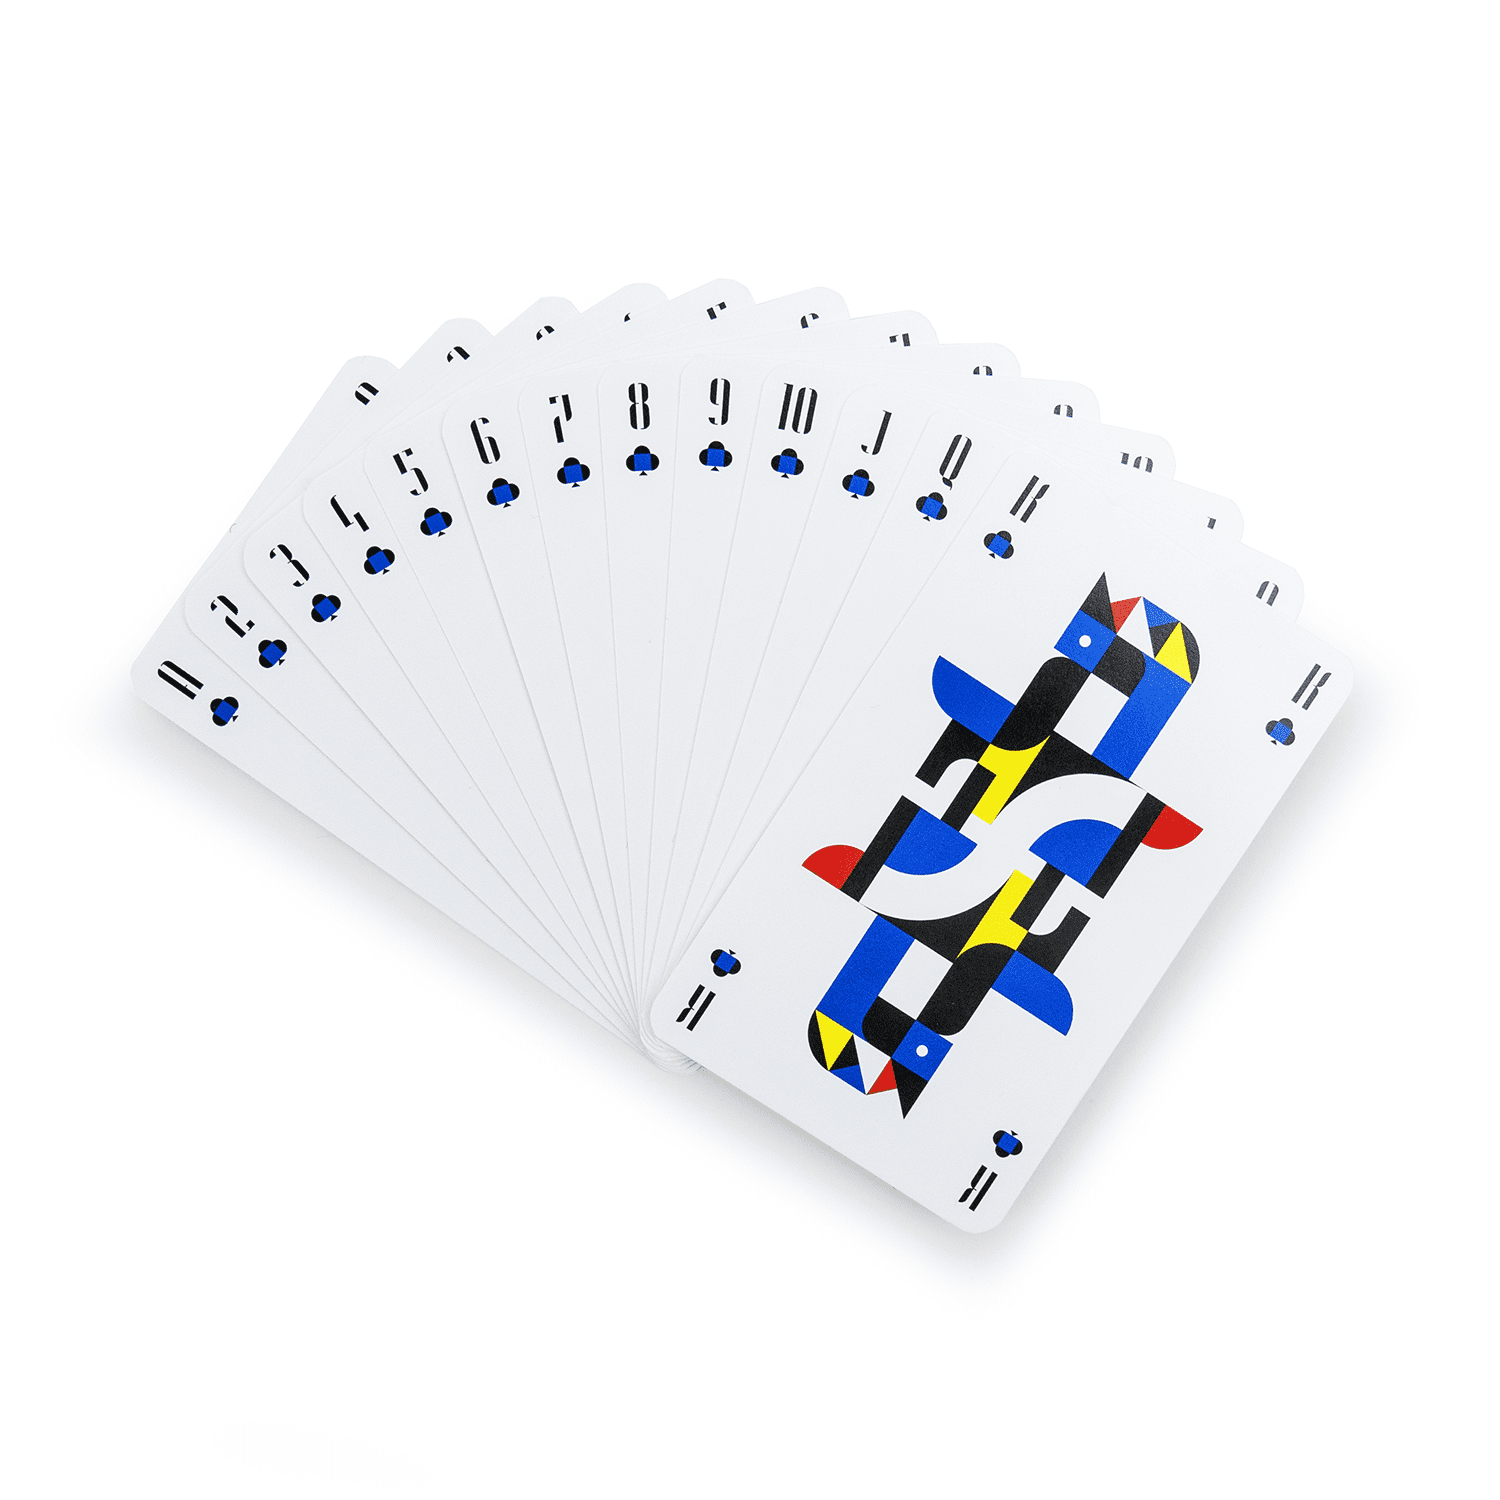 Bauhaus Playing Cards Bauhaus Movement